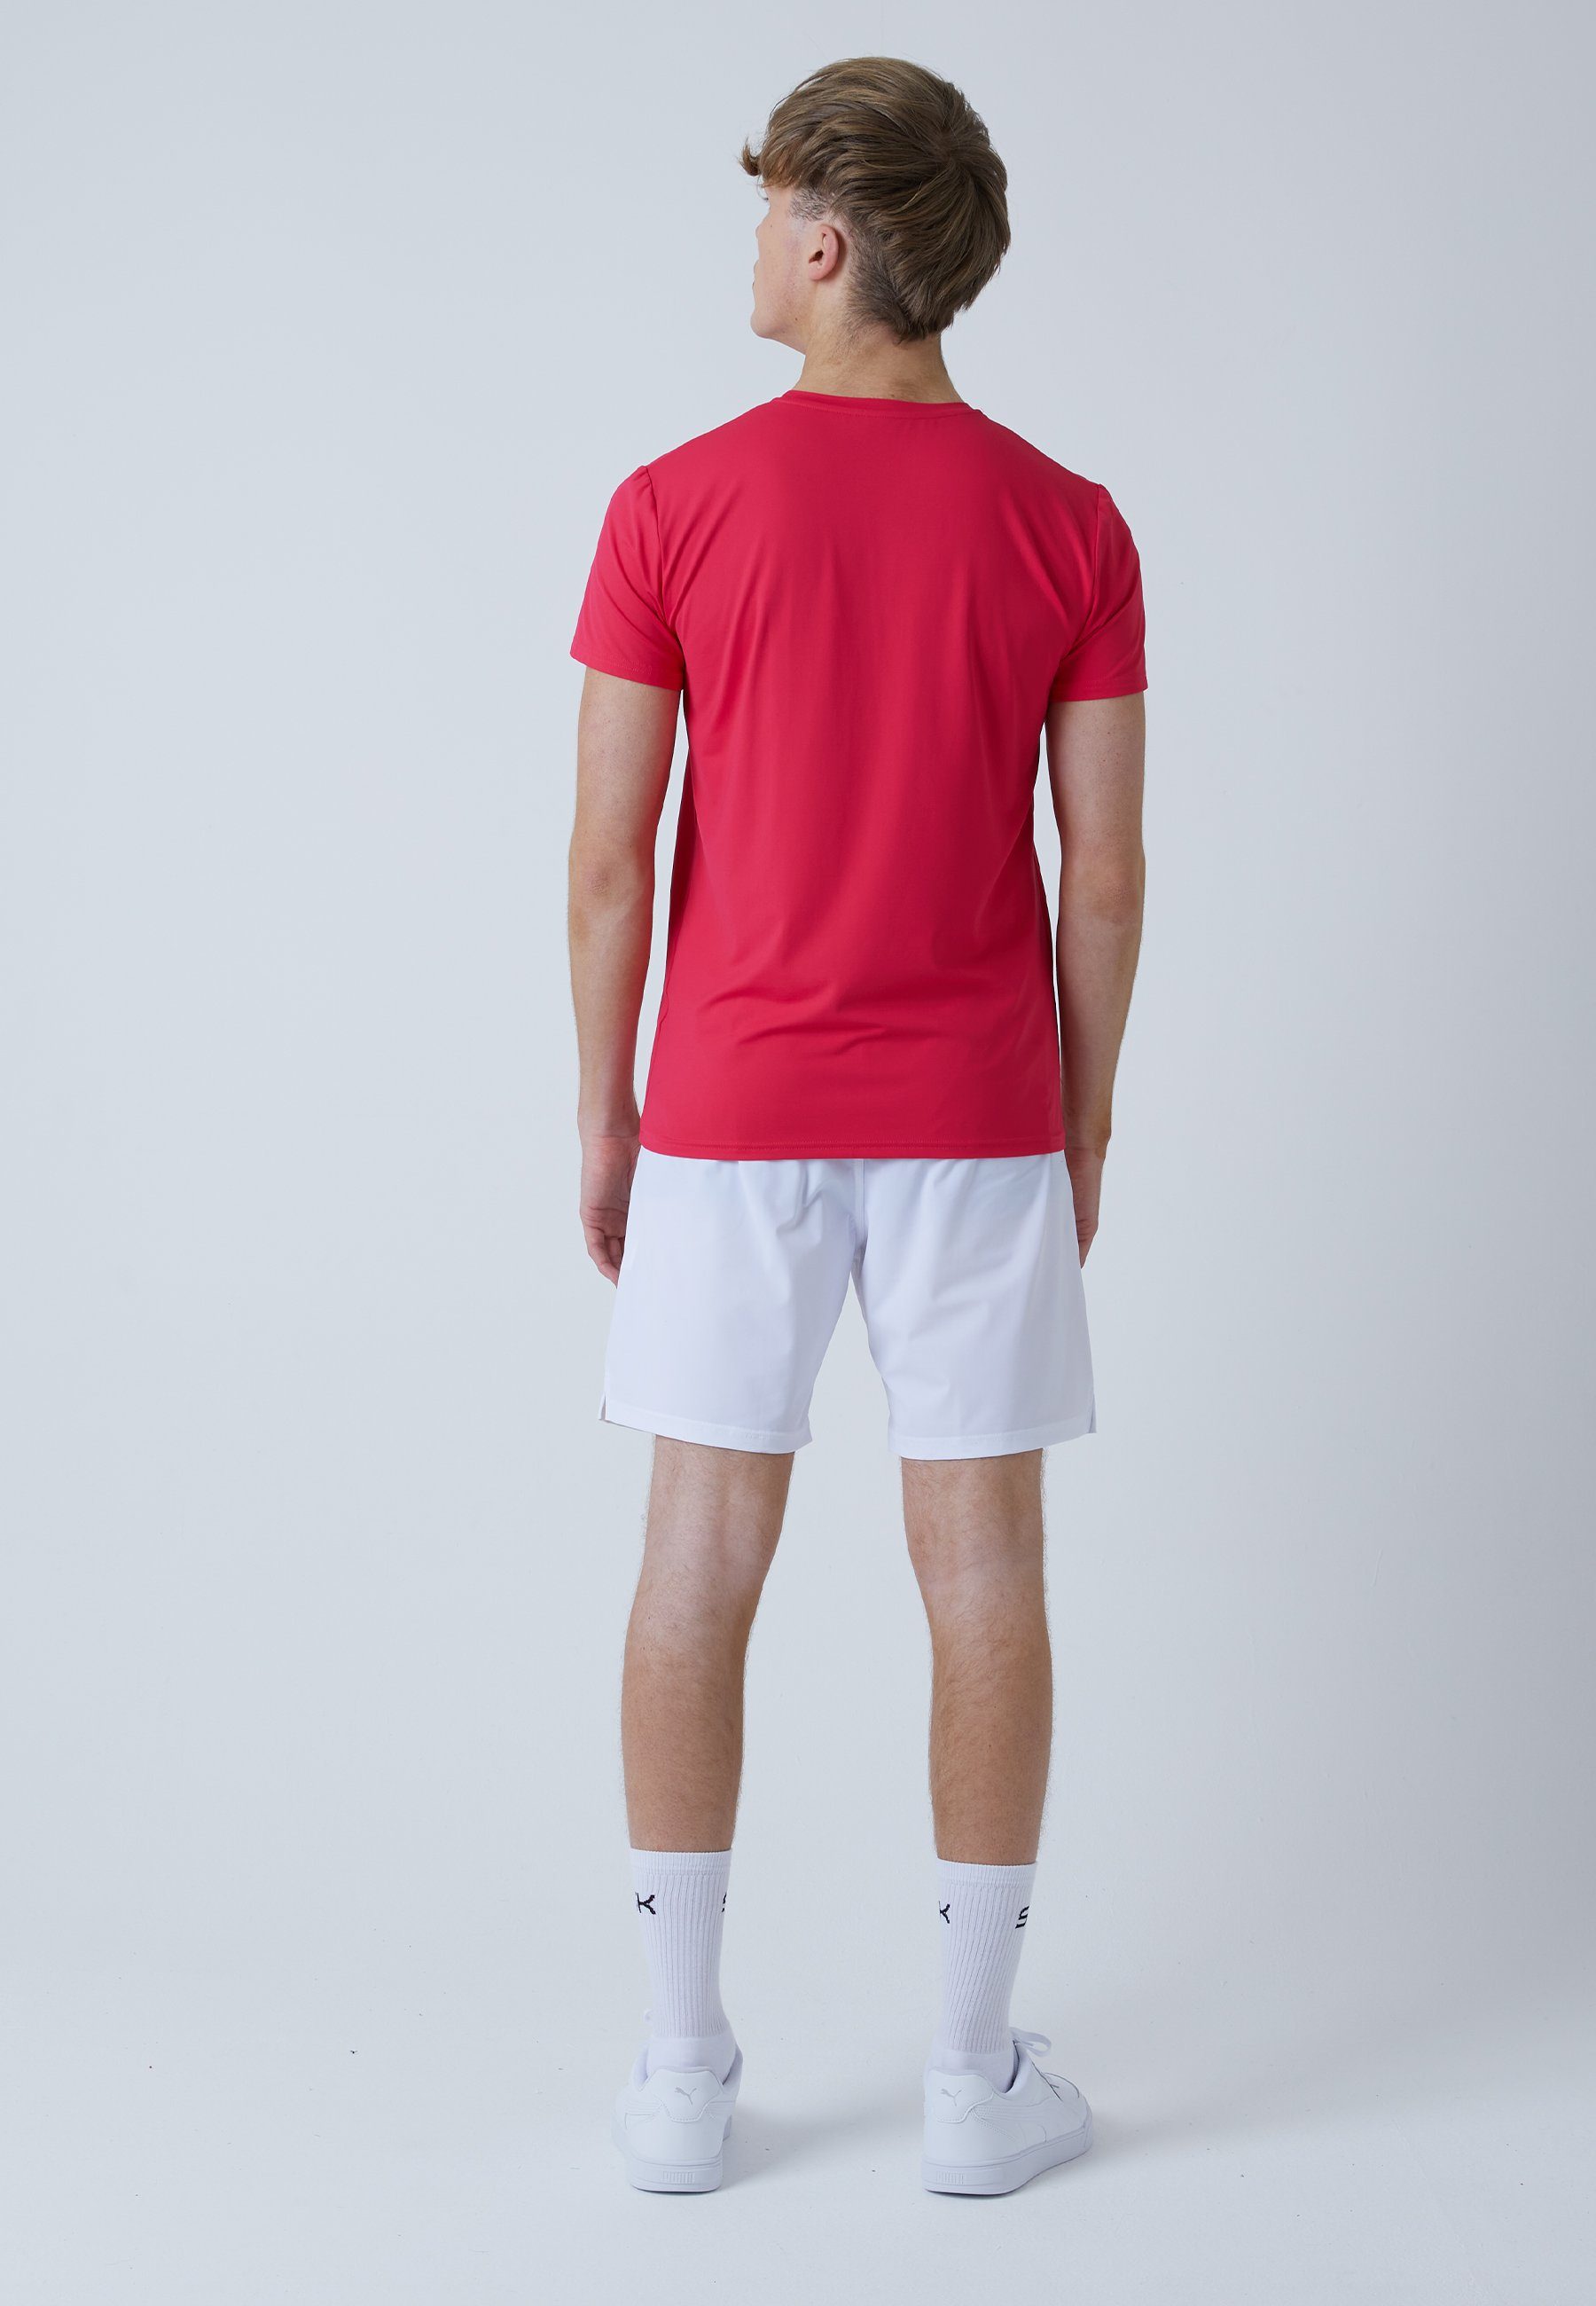 Jungen Funktionsshirt Rundhals Tennis SPORTKIND pink & Herren T-Shirt